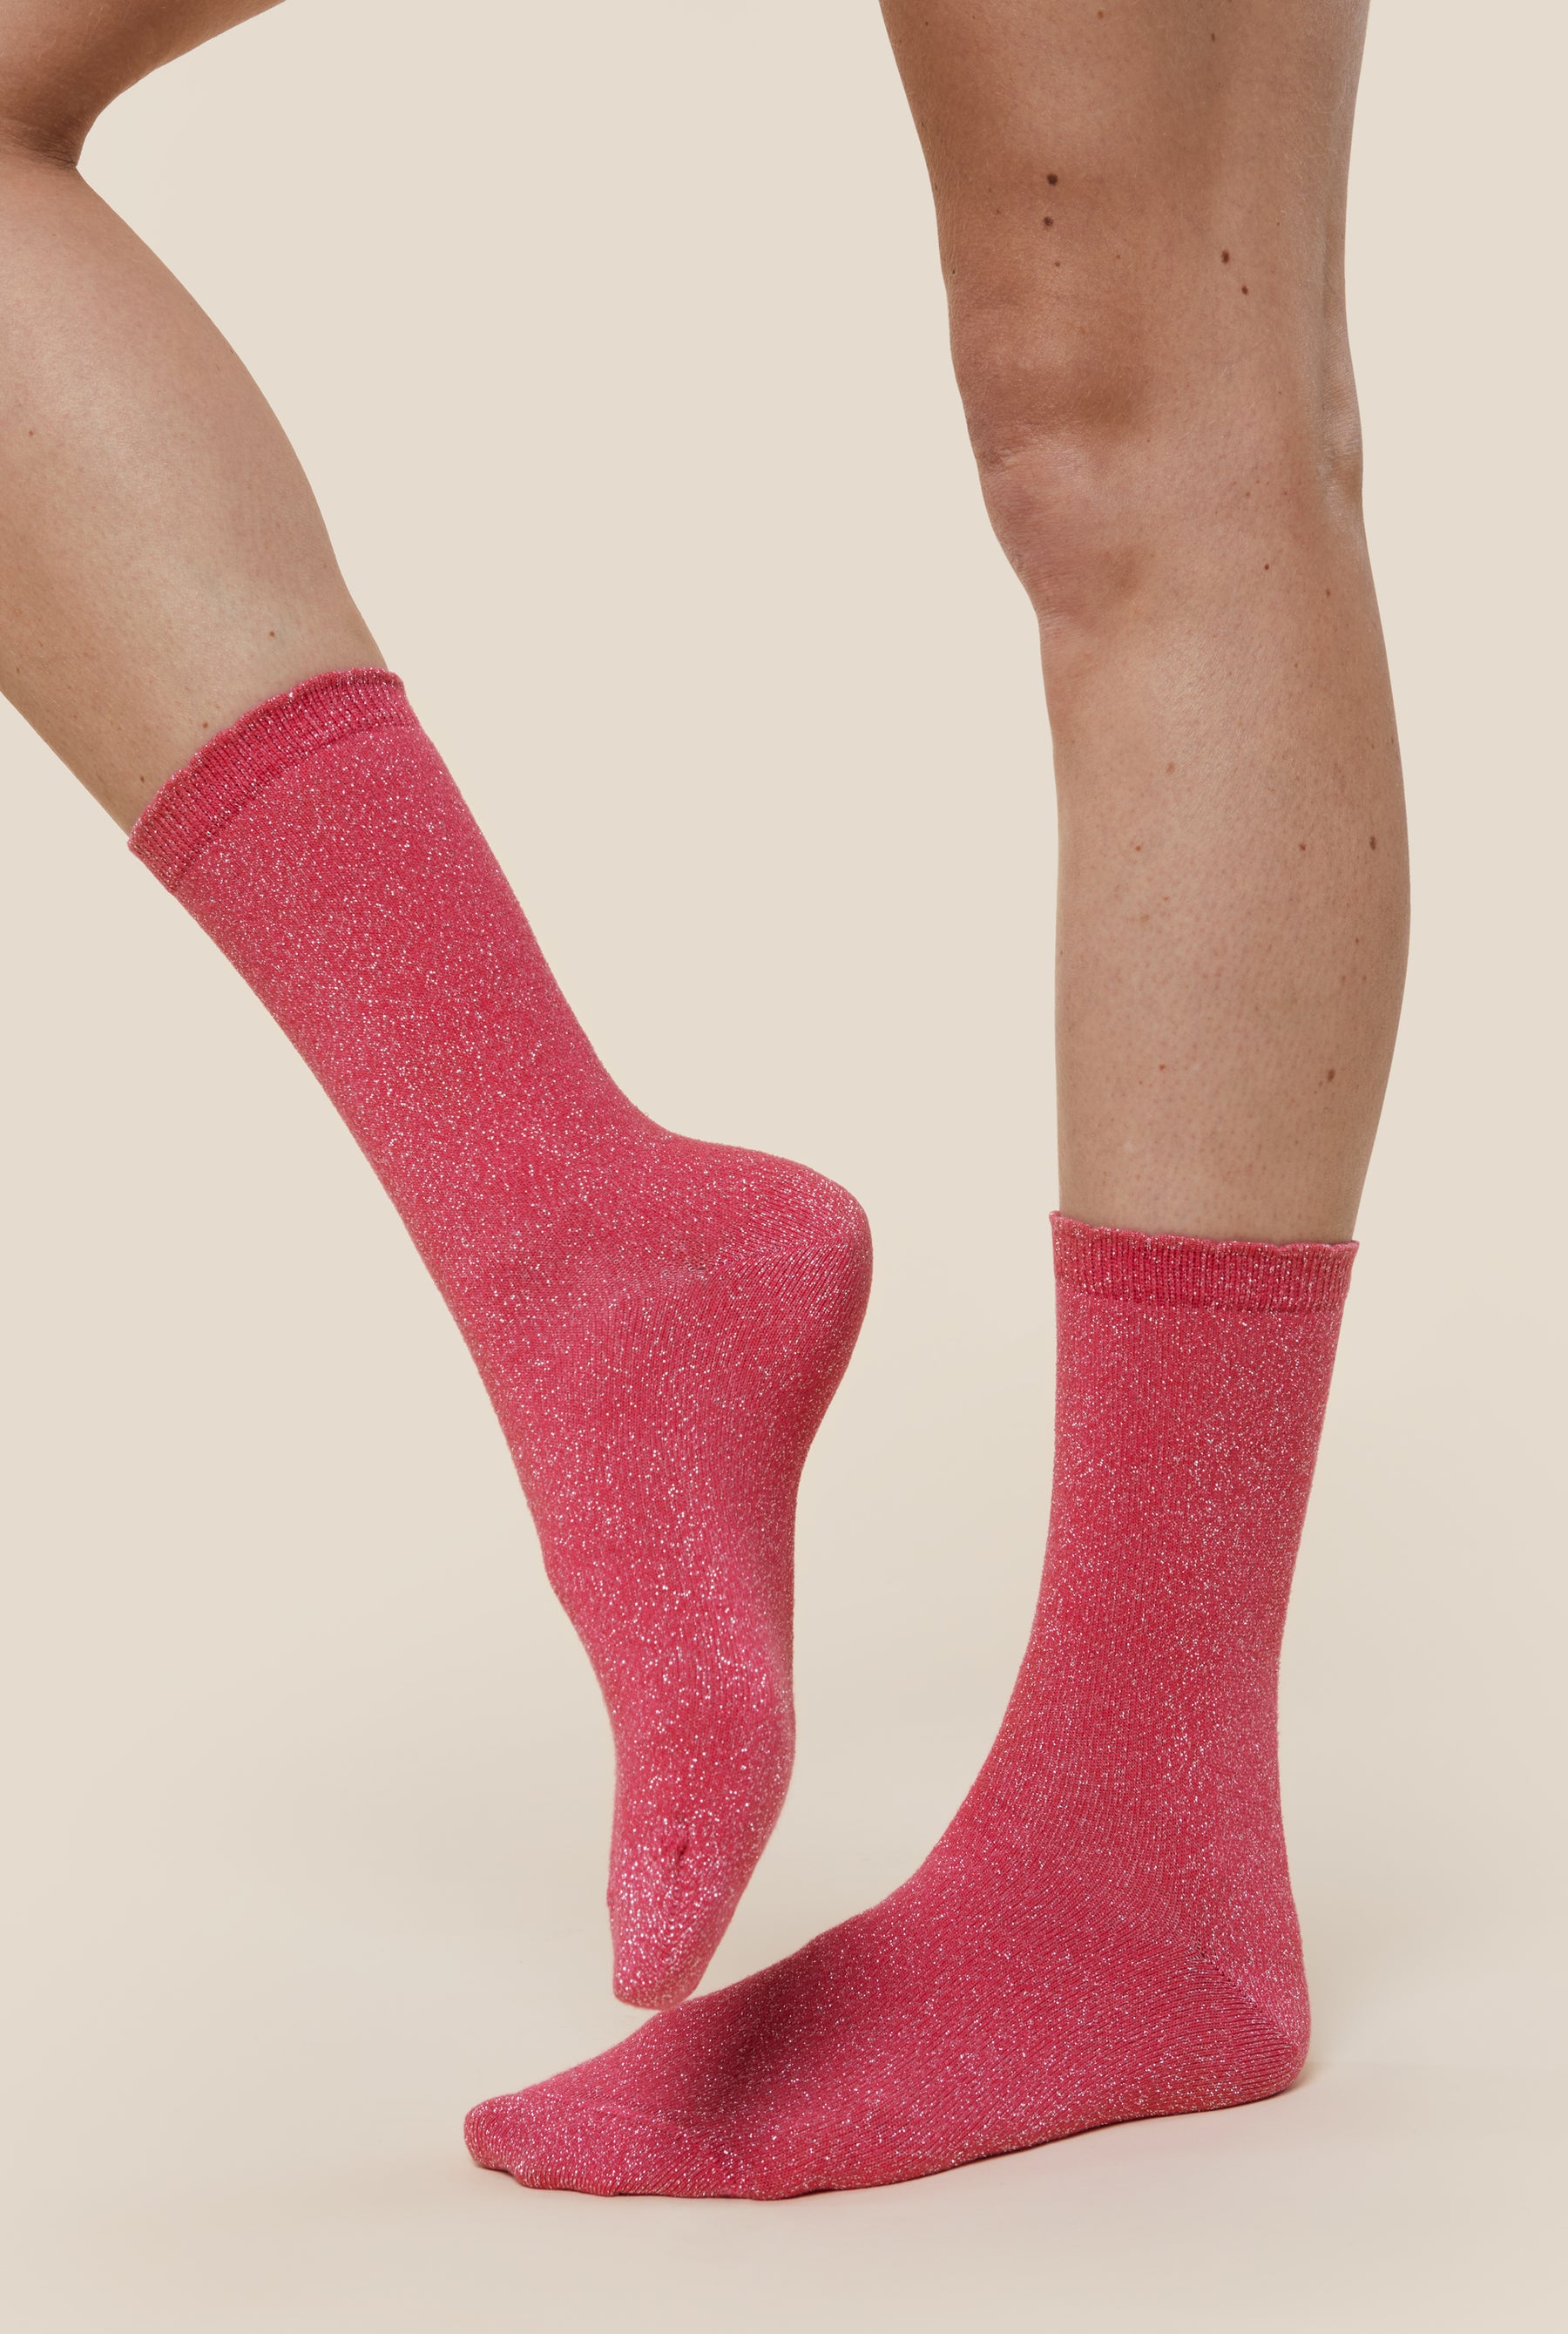 Chaussettes coton bio roses pour femme